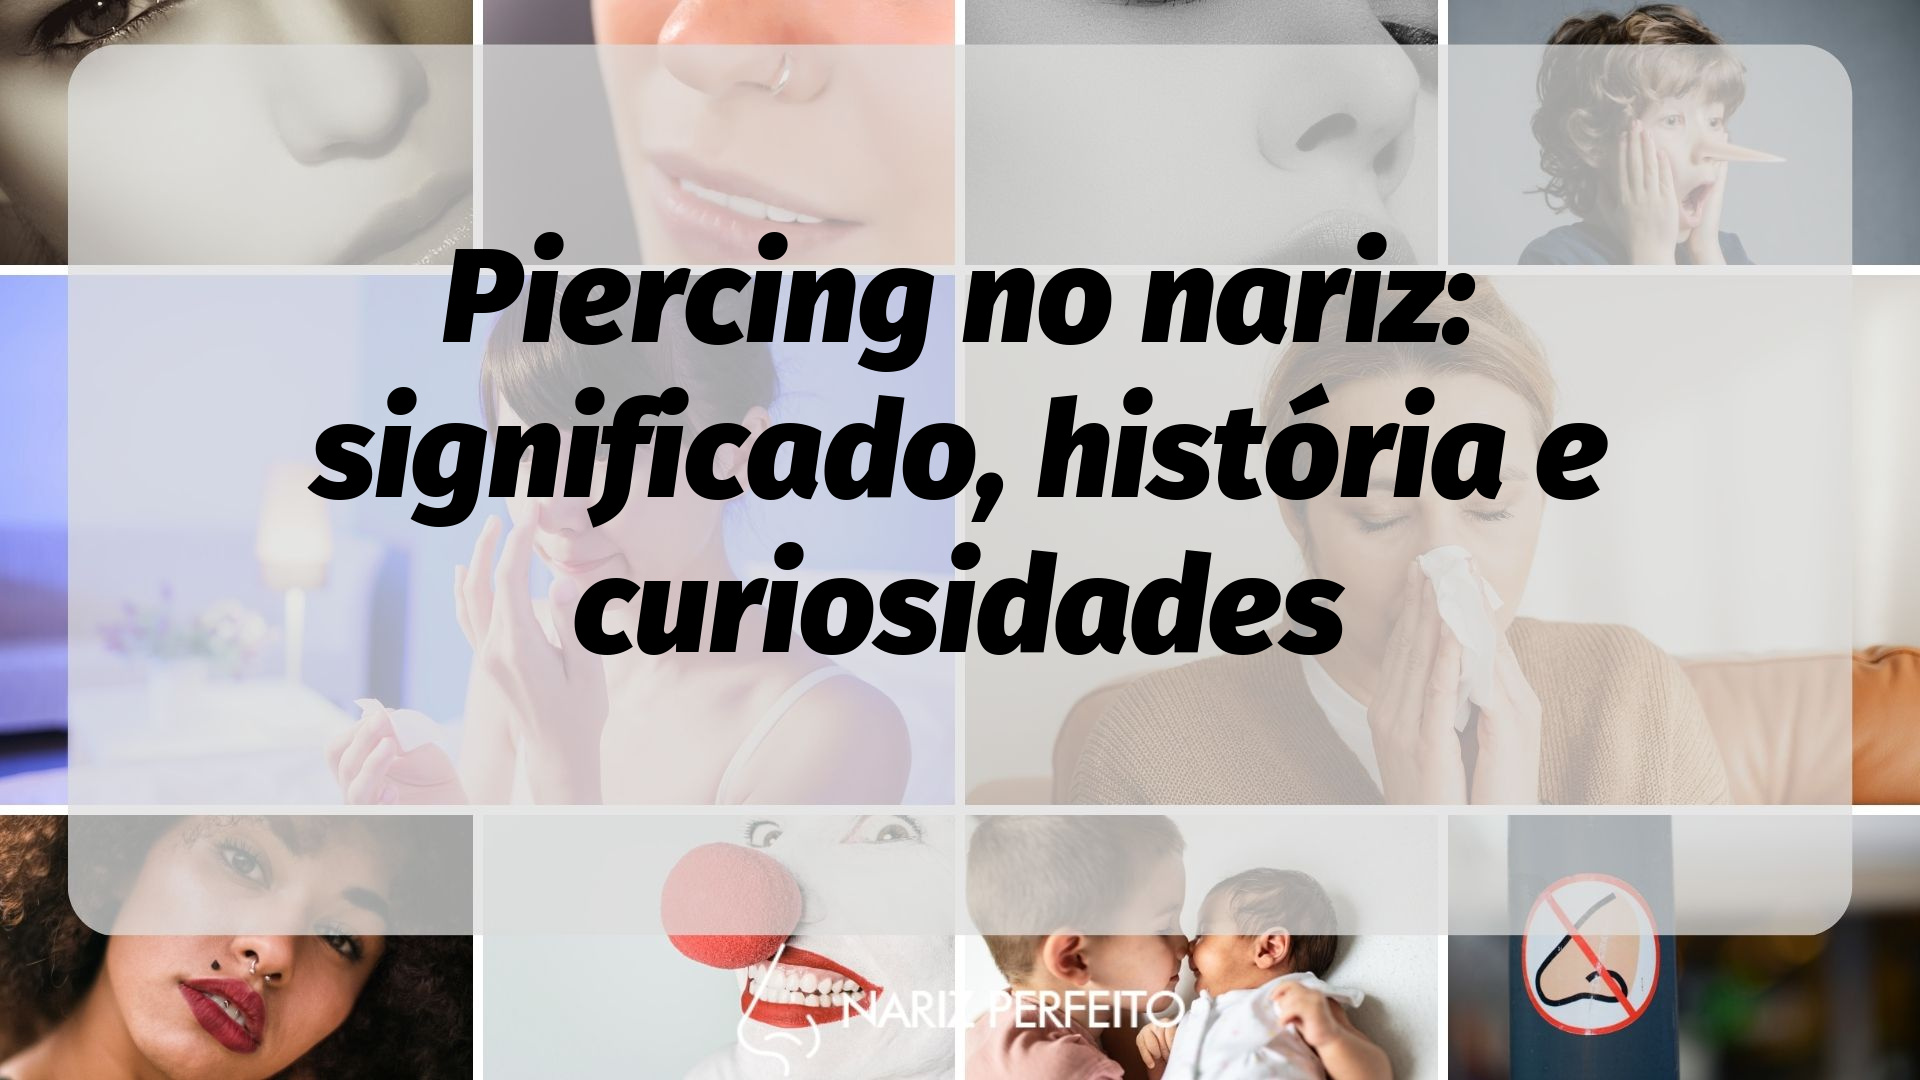 9 curiosidades sobre a história do piercing que você talvez não saiba